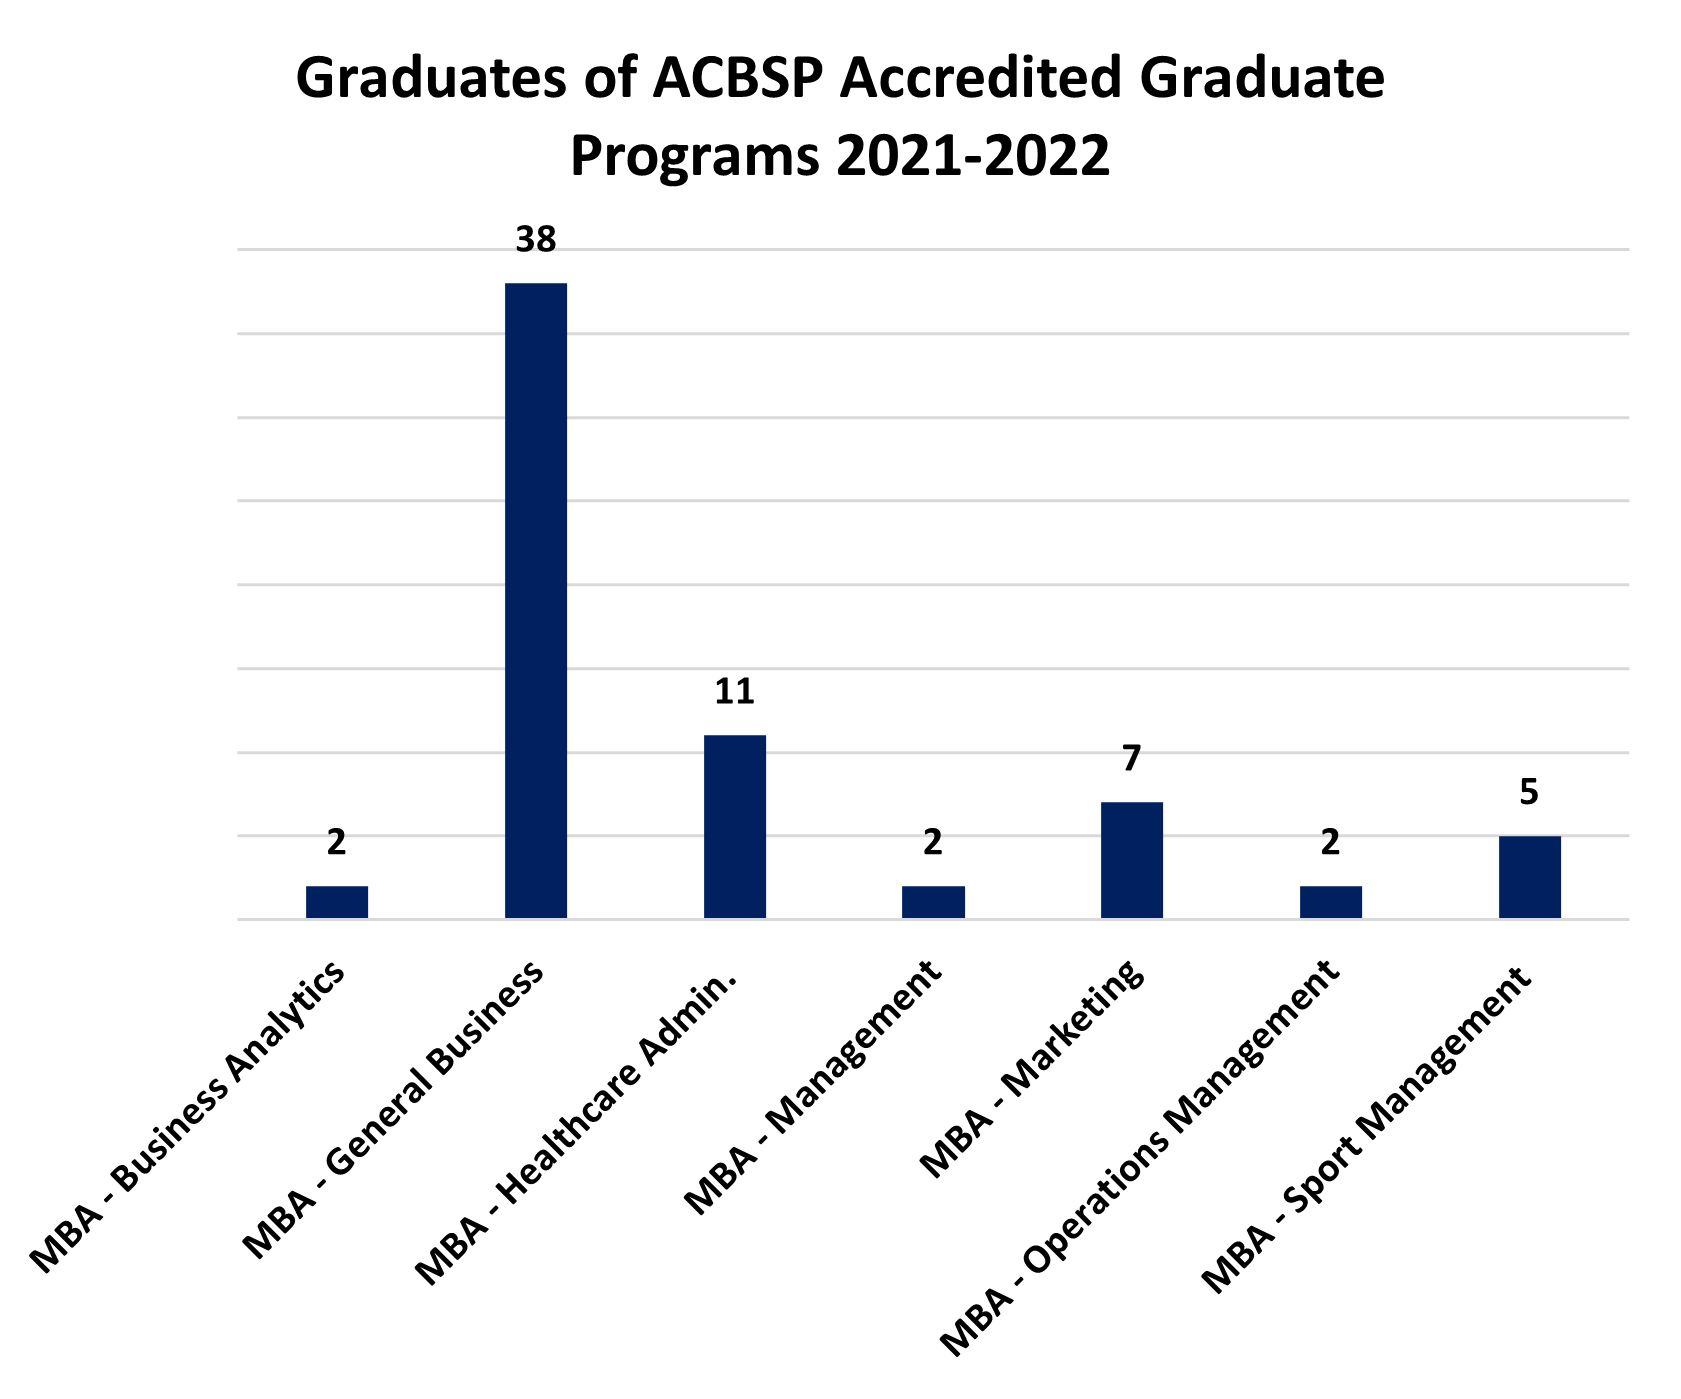 Graduates-of-ACBSP-Grad-Programs-2020-2021.PNG